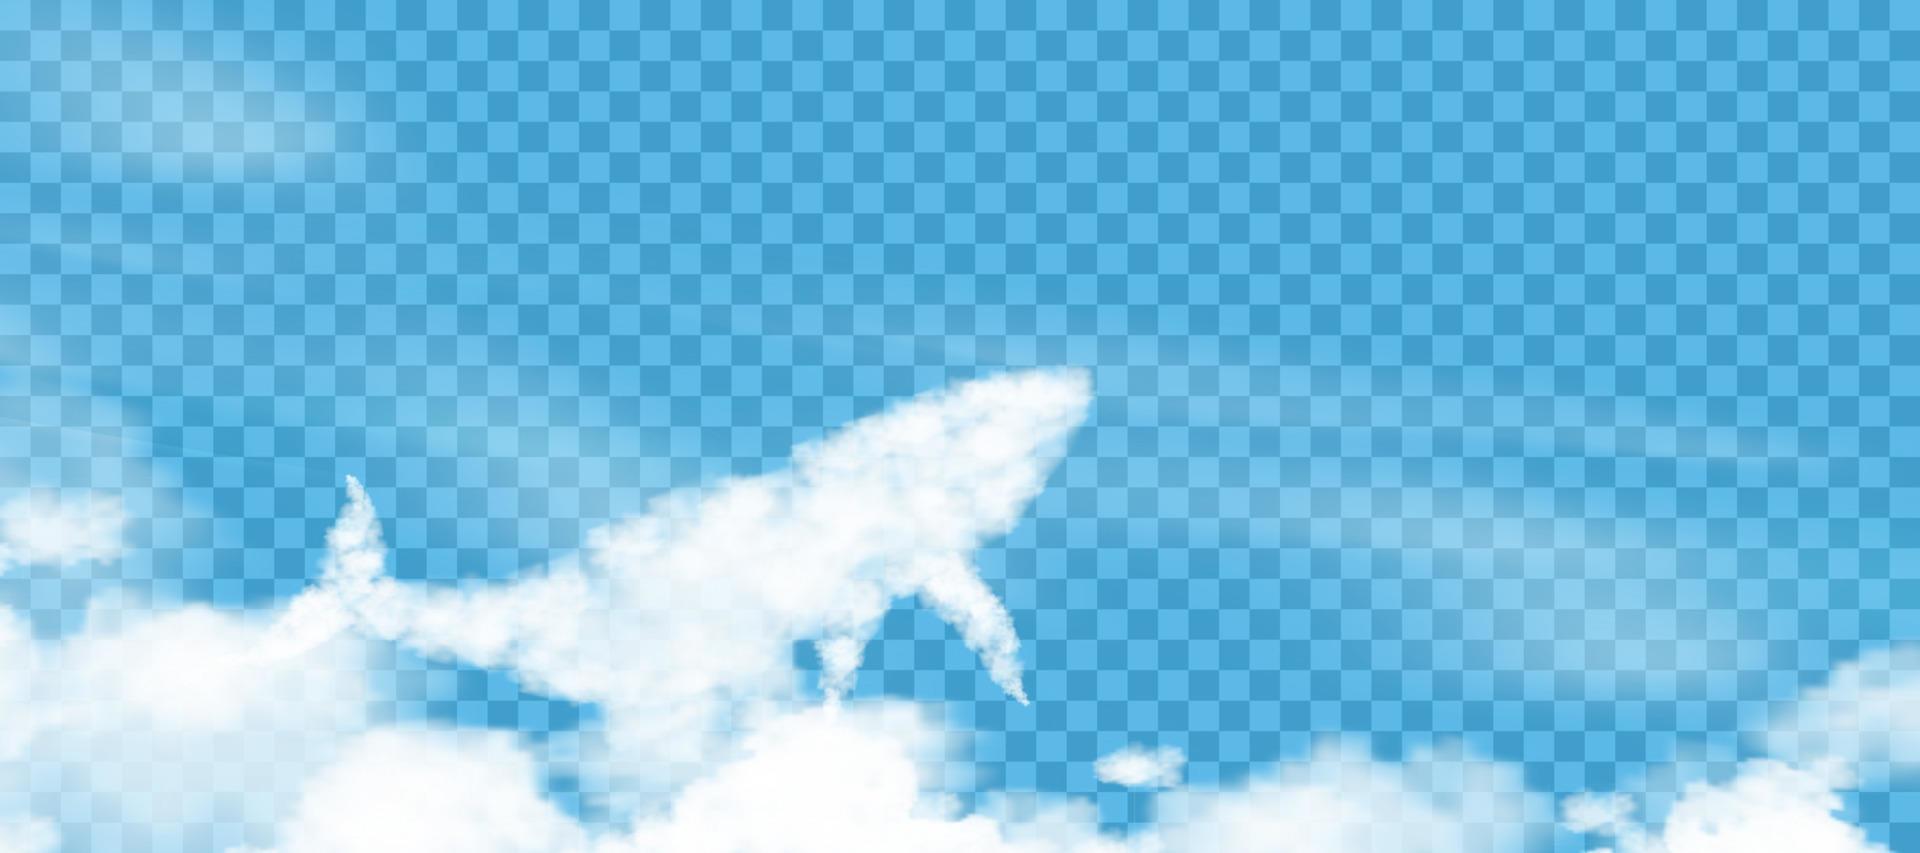 fluffigt moln i valform flyger upp till himlen på blå genomskinlig bakgrund, vektor 3d bakgrund tecknad söt natur himmel dekoration för webbbanner som täcker, horisontbanner i solig dag vår sommar